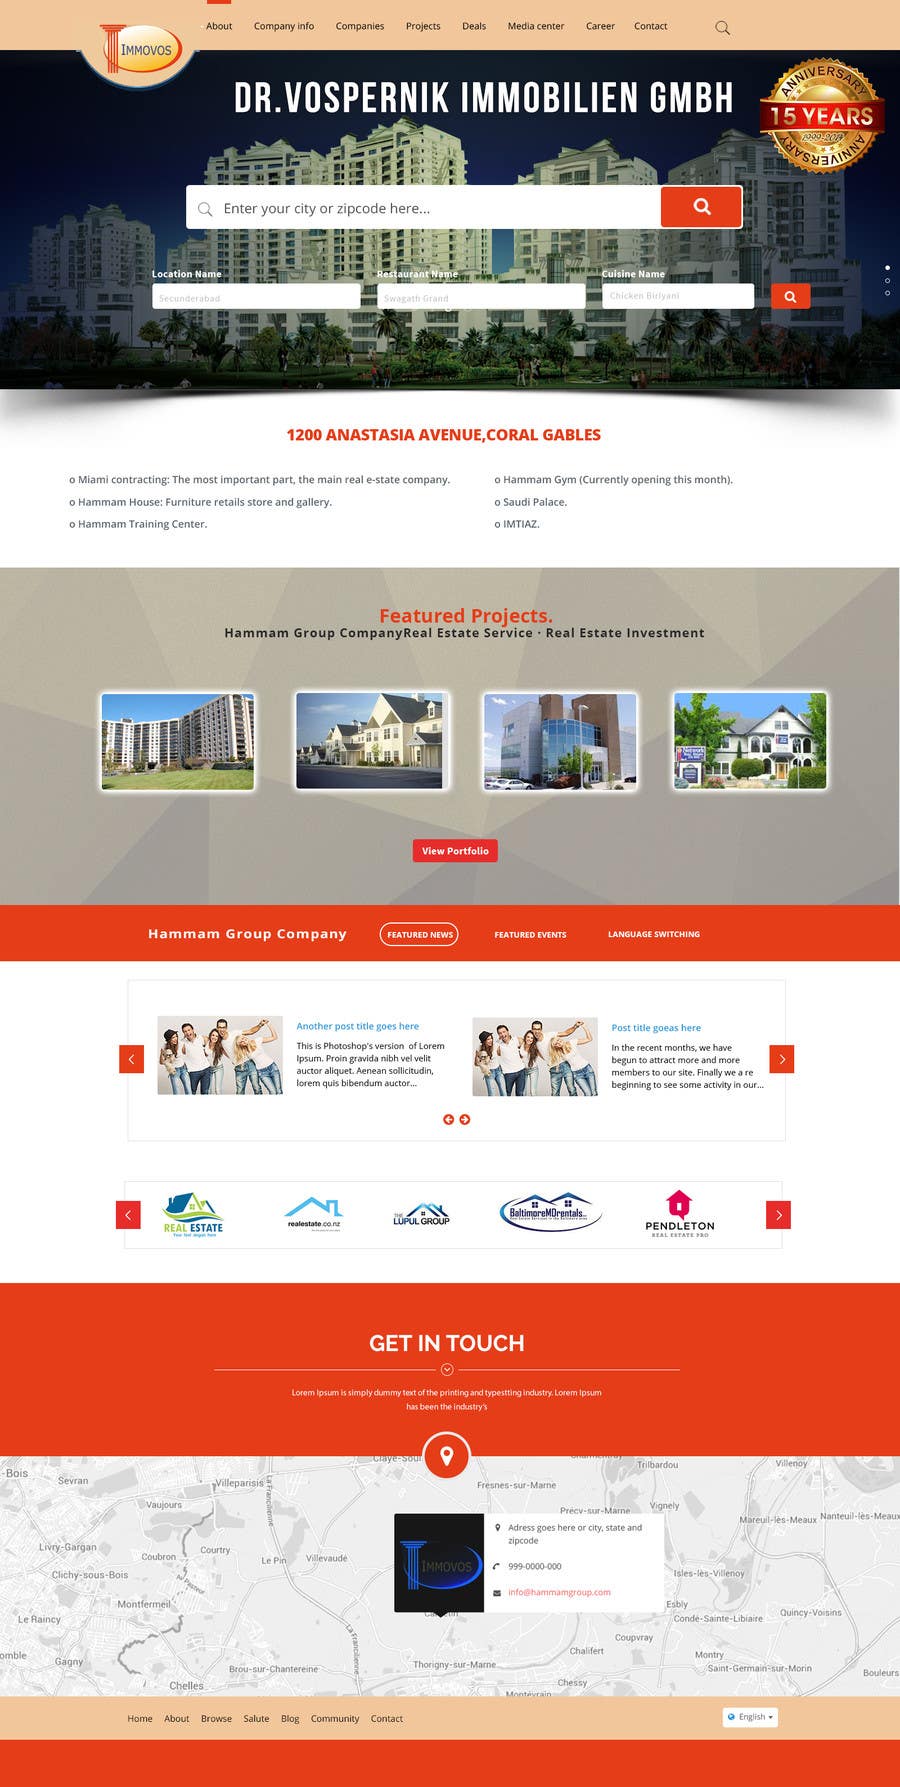 Penyertaan Peraduan #1 untuk                                                 new website screendesign for real estate company
                                            